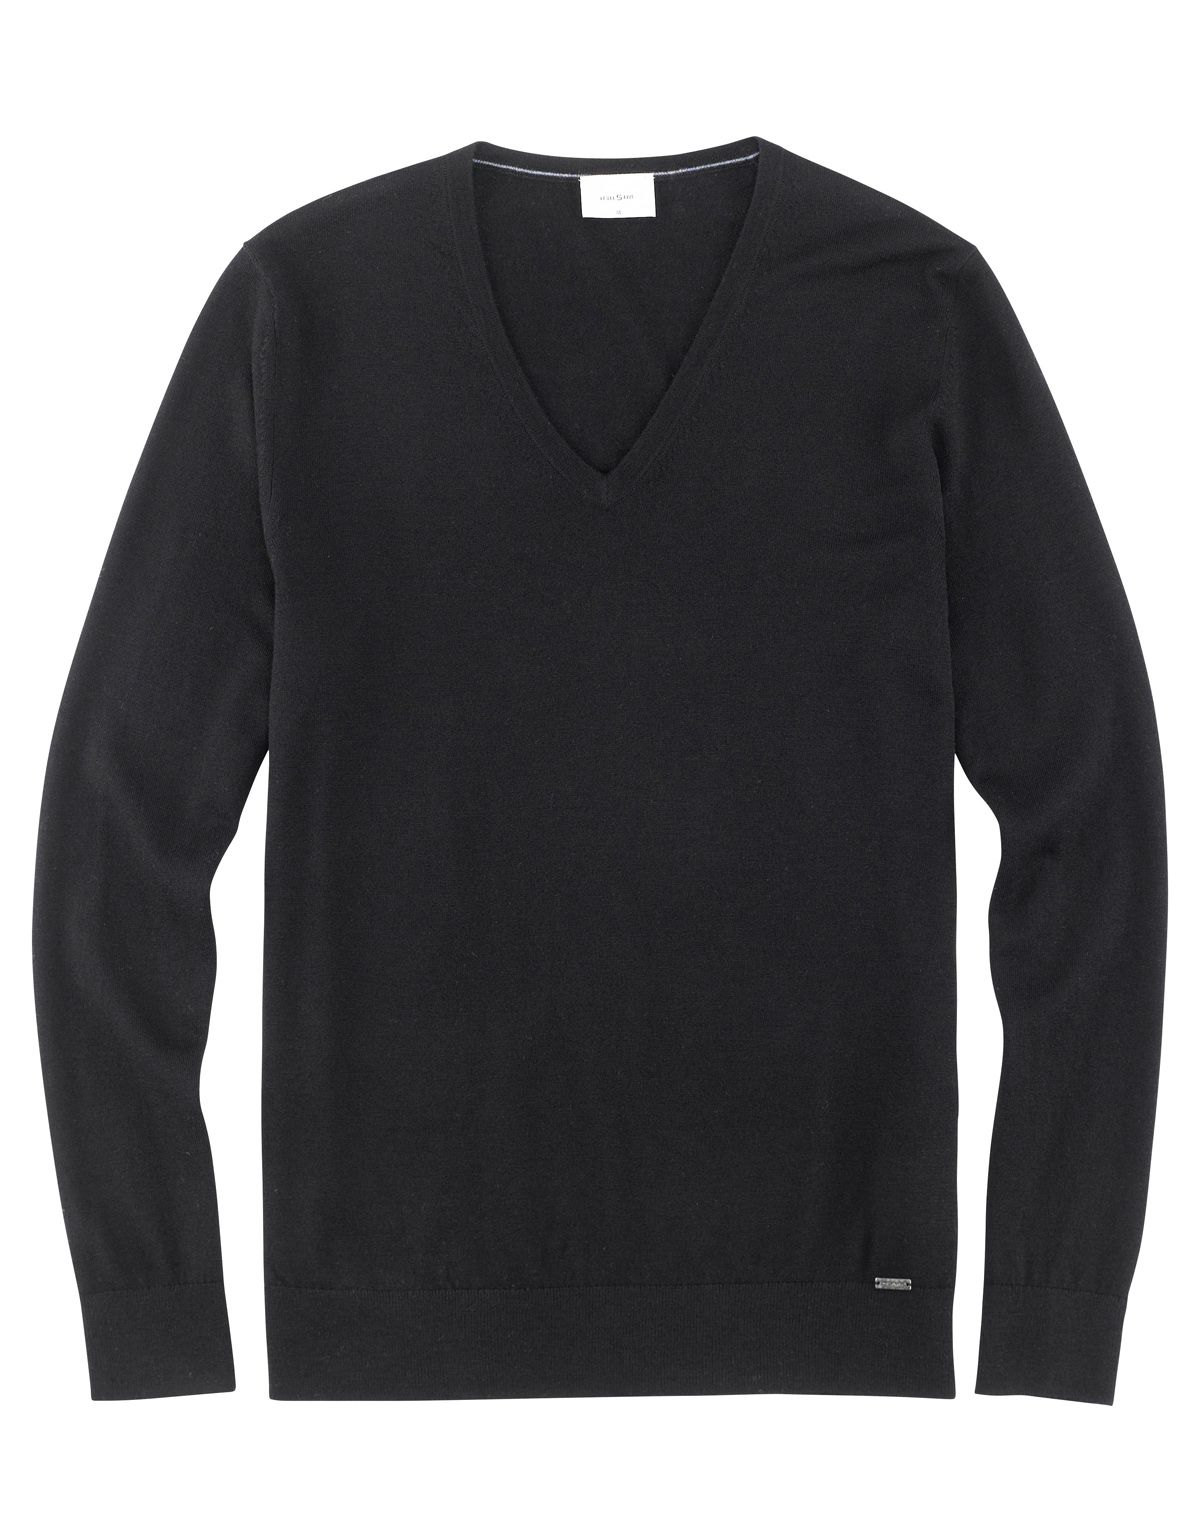 Пуловер черный мужской OLYMP, body fit | купить в интернет-магазине Olymp-Men